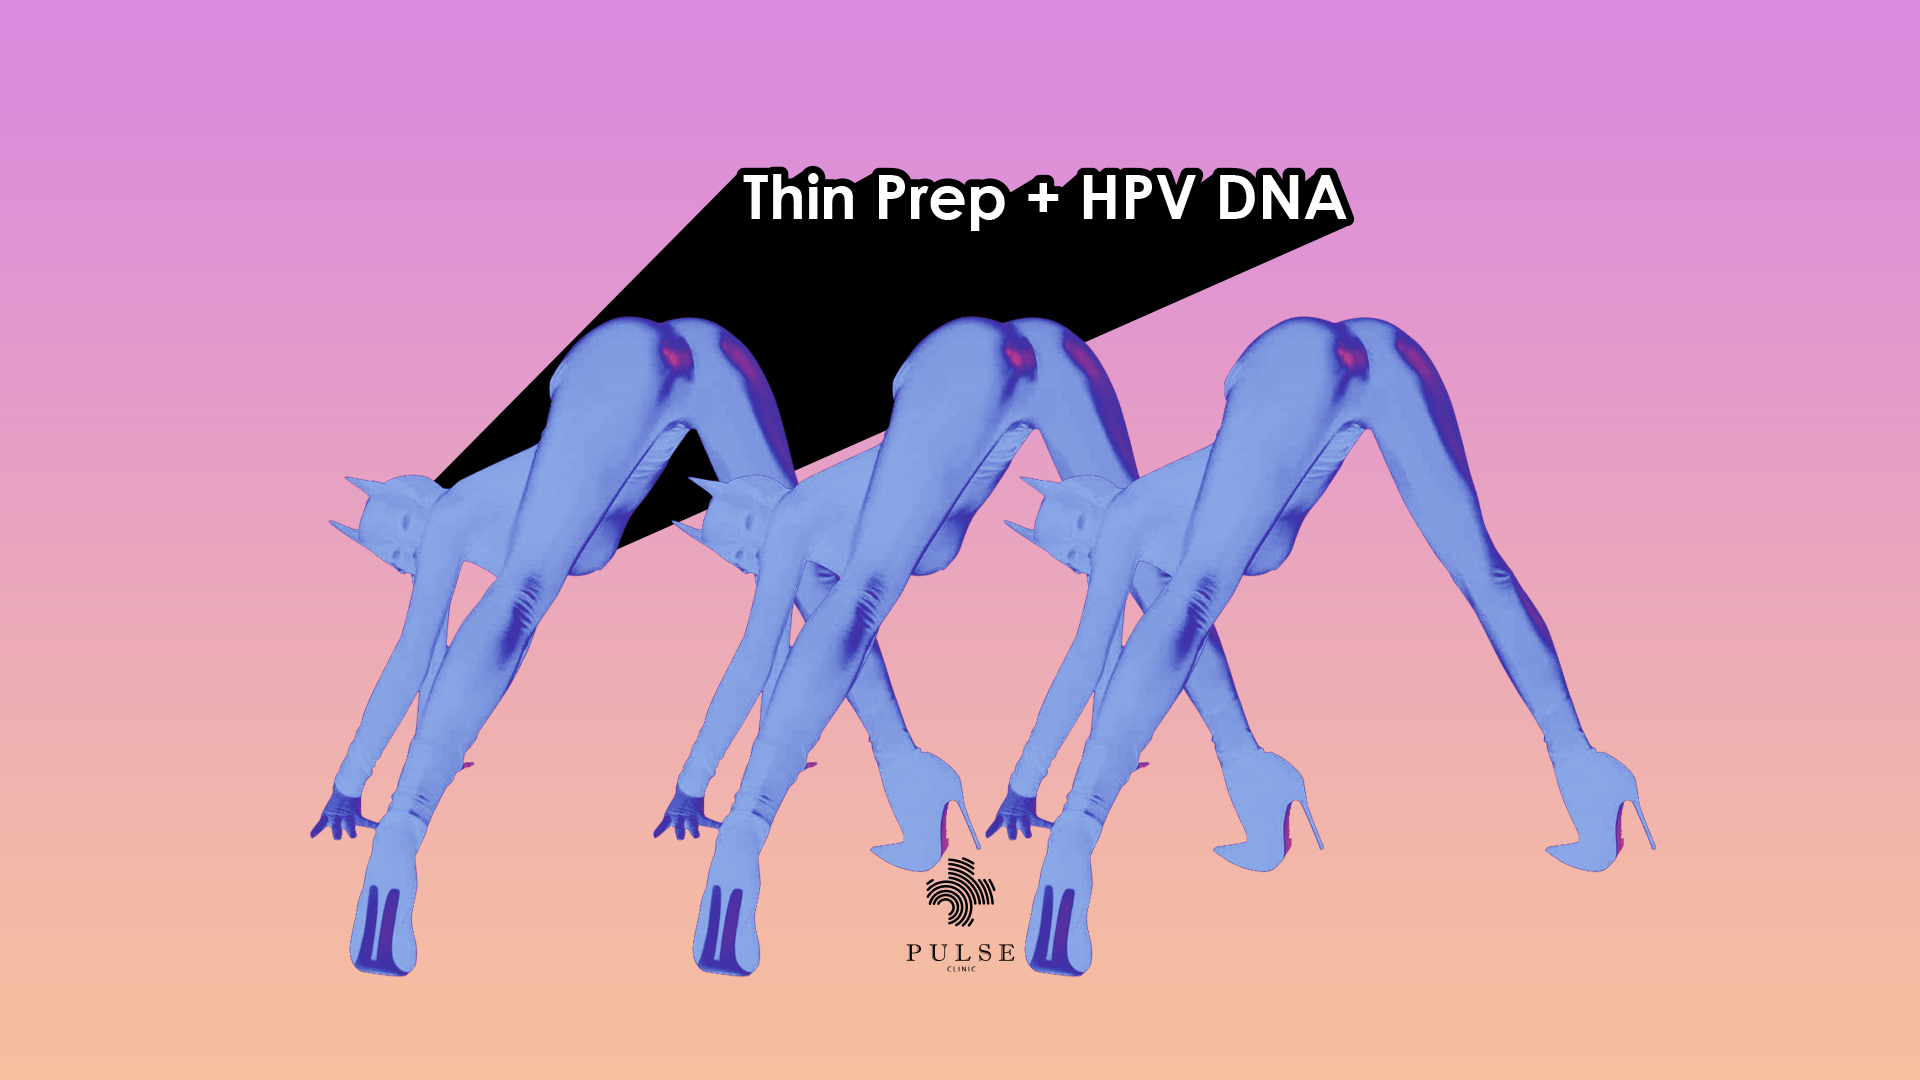 HPV (Human Papilloma Virus) DNA Testing Service in Bangkok, Pattaya, Phuket, Chiang Mai - THAILAND